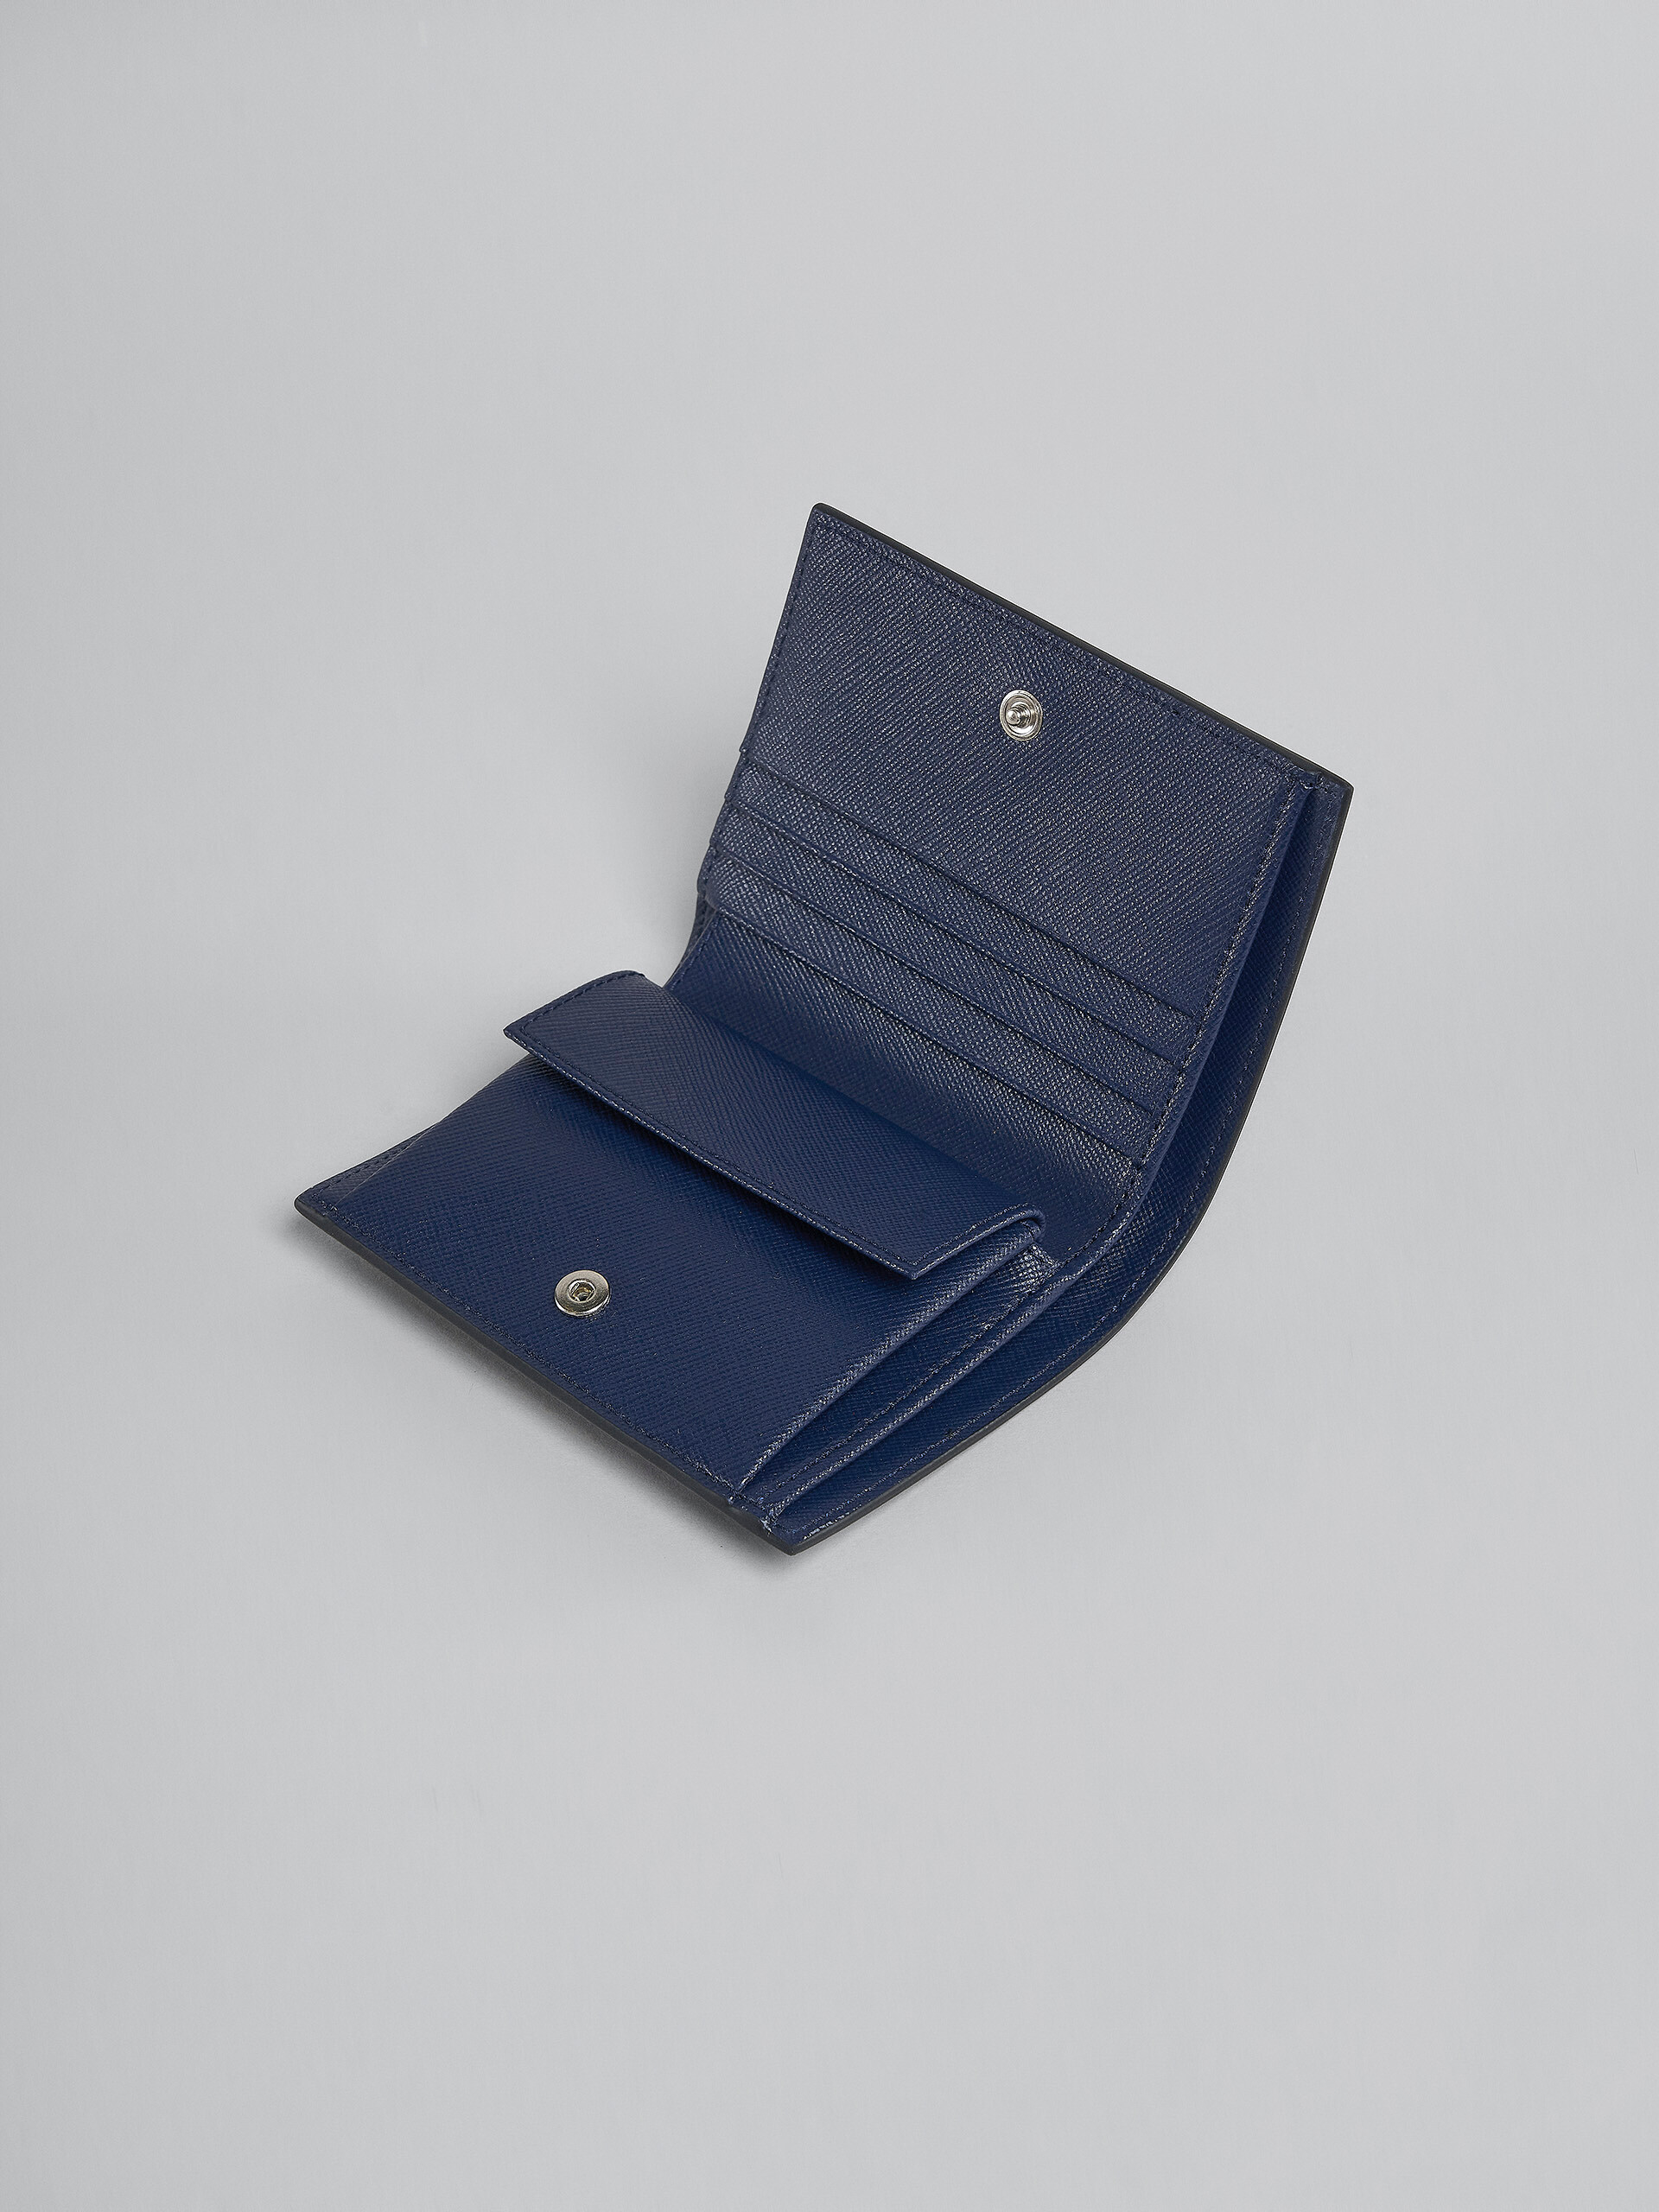 Zweifache Faltbrieftasche aus blauem Saffiano-Leder - Brieftaschen - Image 4